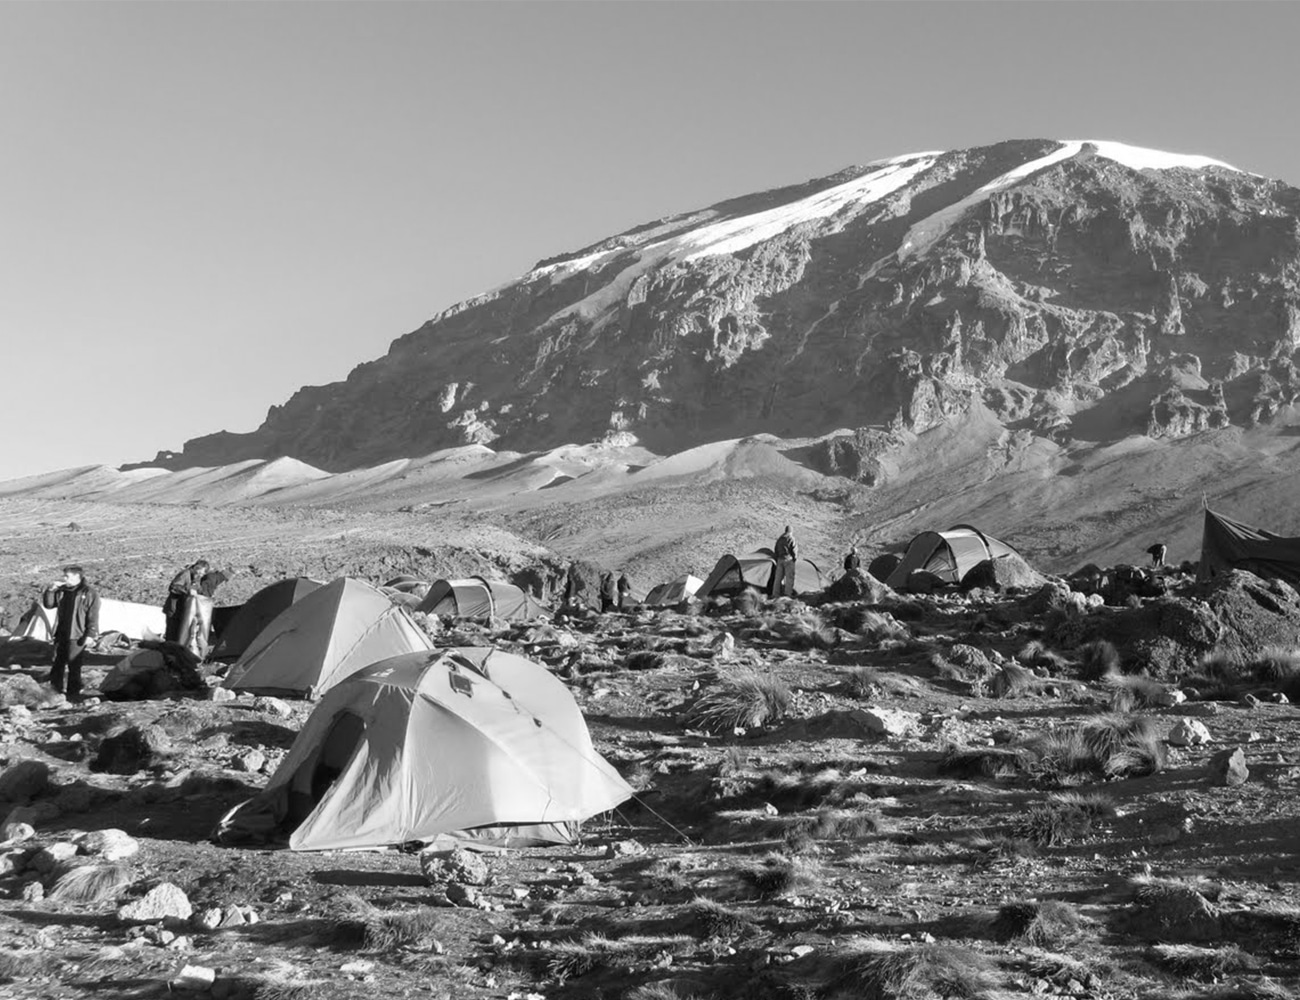 The Mount Kilimanjaro Marangu route